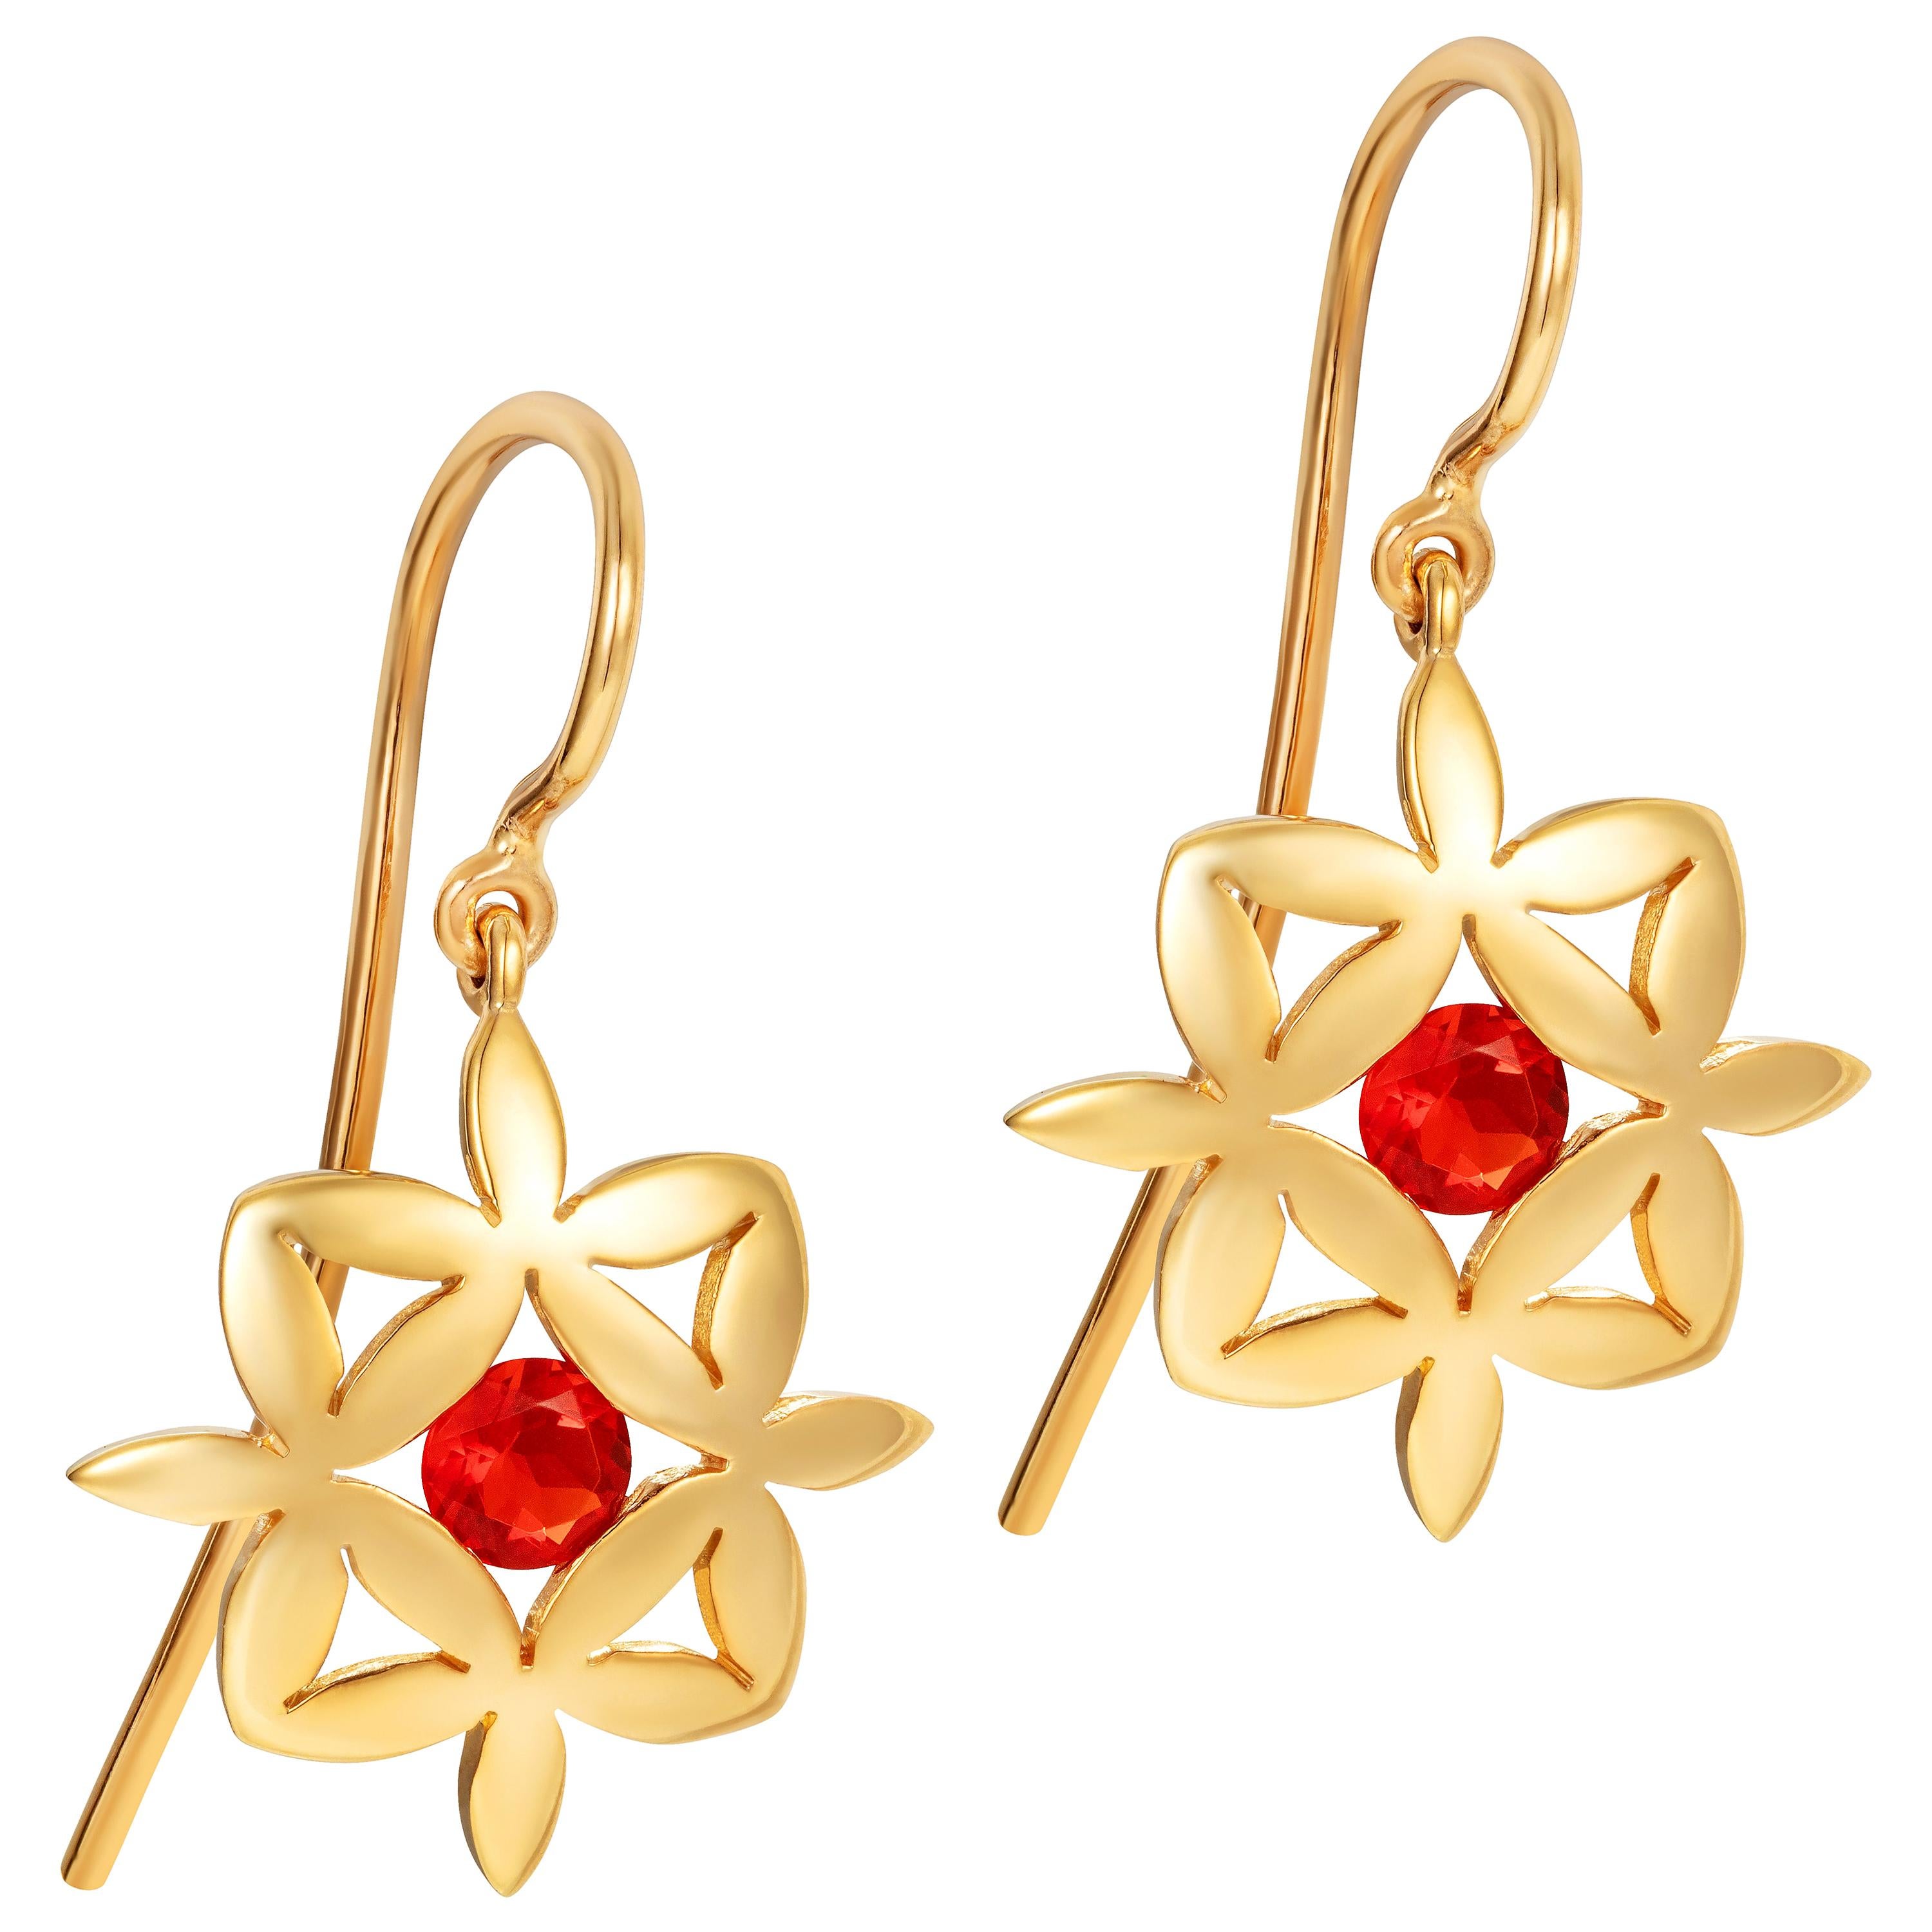 Fire Opal 9 Karat Yellow Gold Earrings For Sale